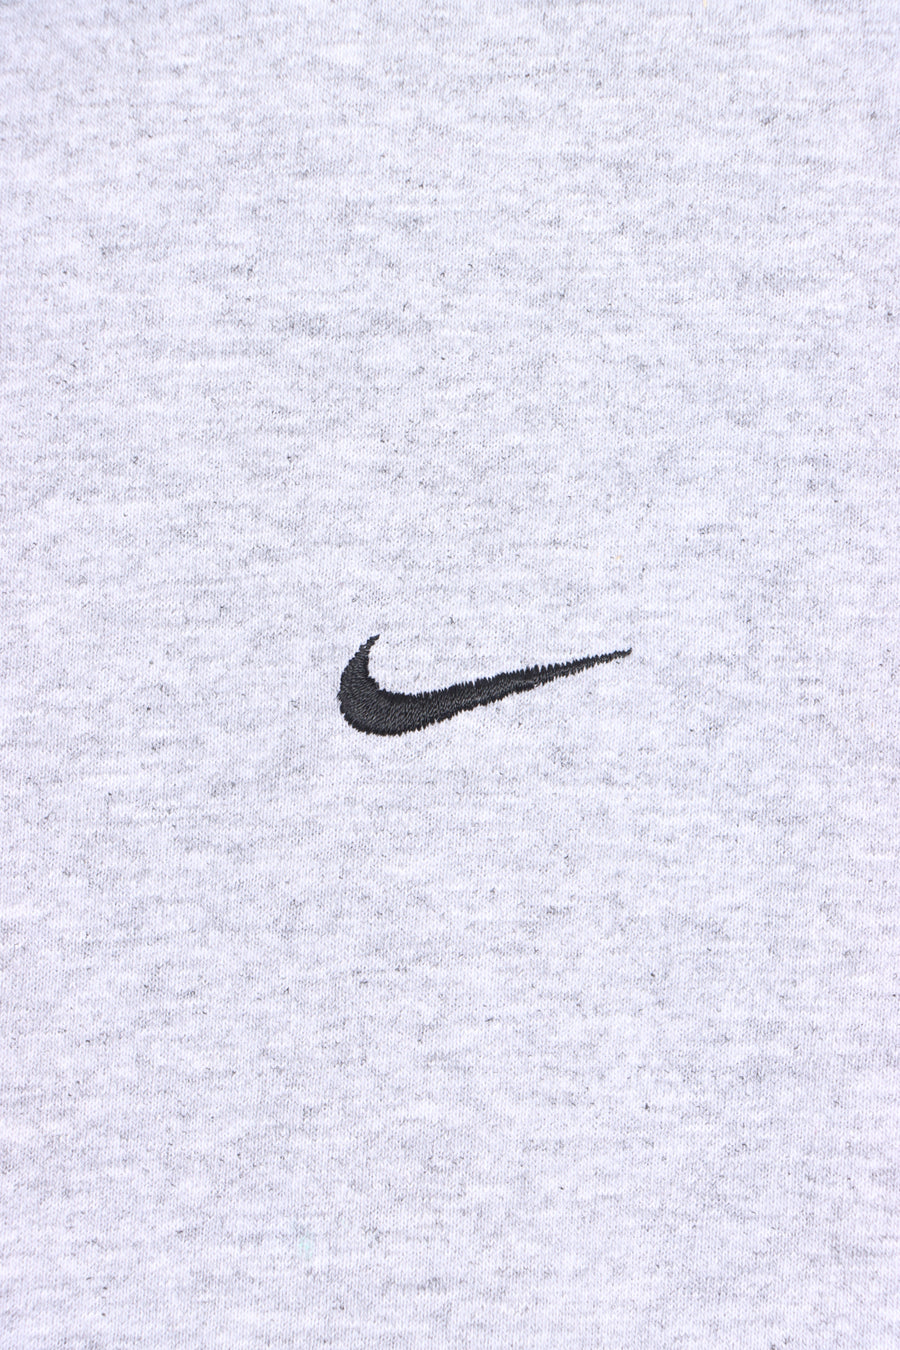 NIKE Swoosh Logo Grey Casual T-Shirt (M)